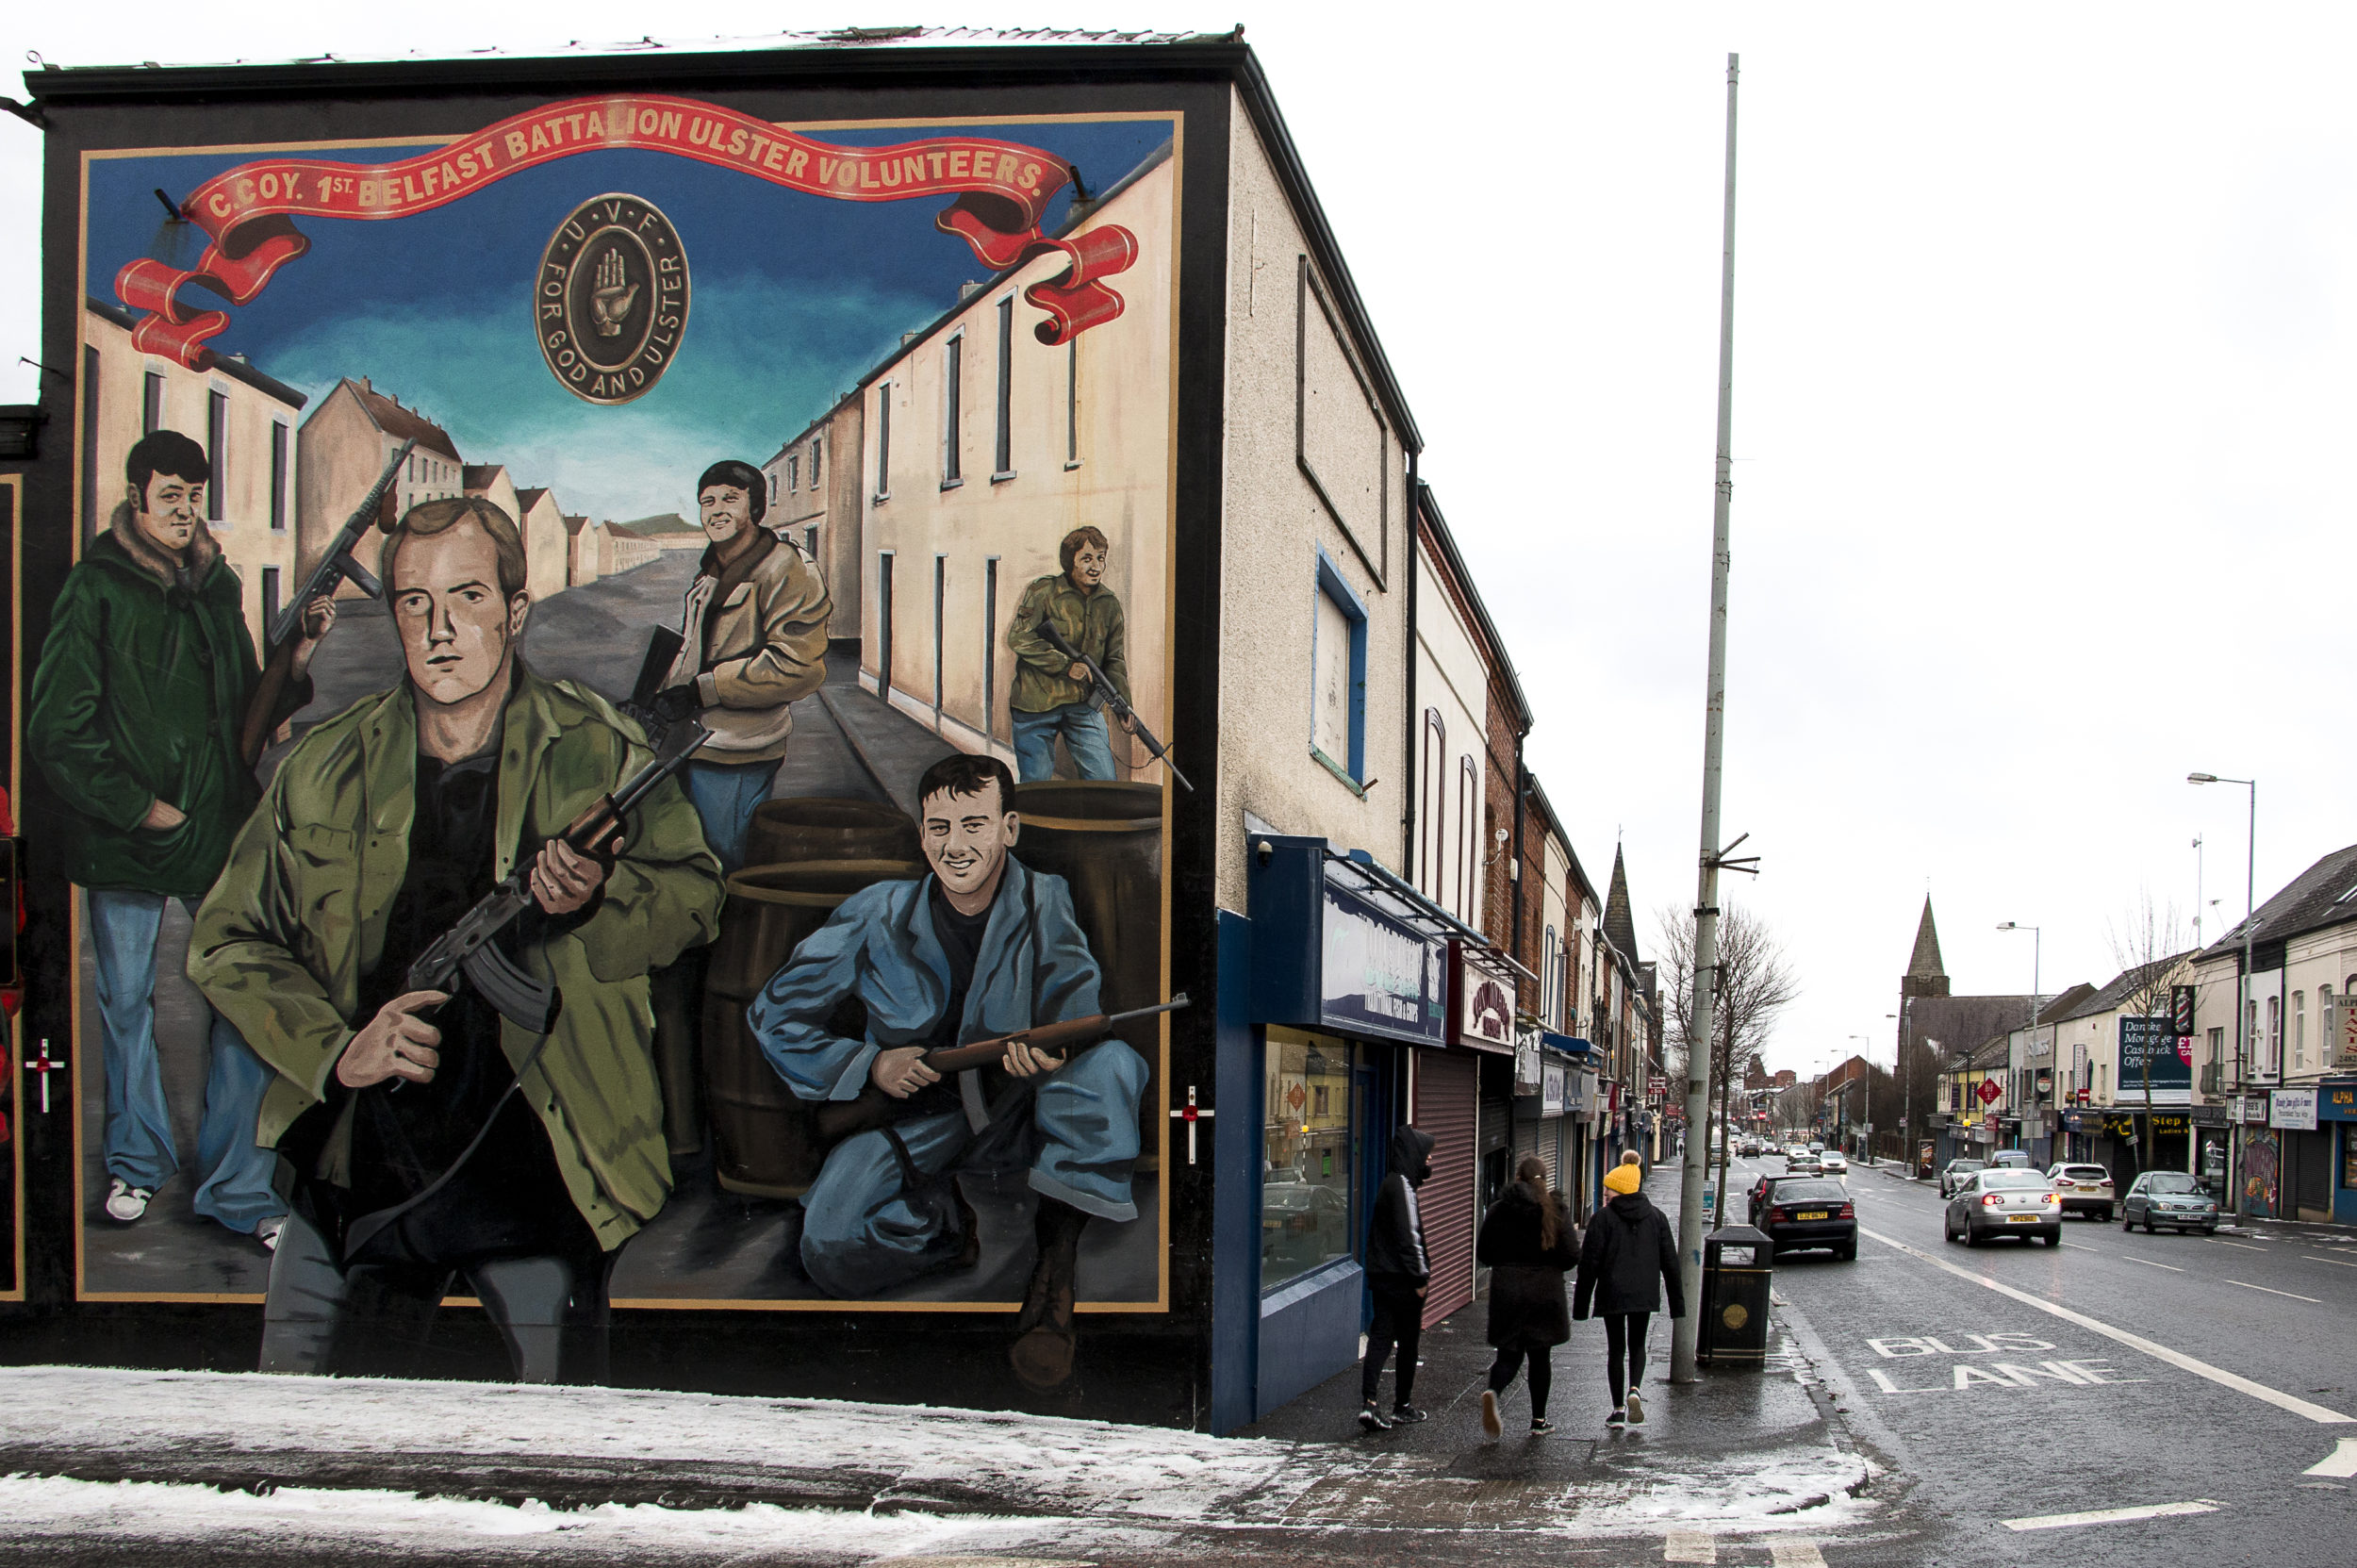 Shankill Road on protestanttialuetta, jonka seinämaalauksissa osoitetaan avoimesti tukea lojalistijengeille.